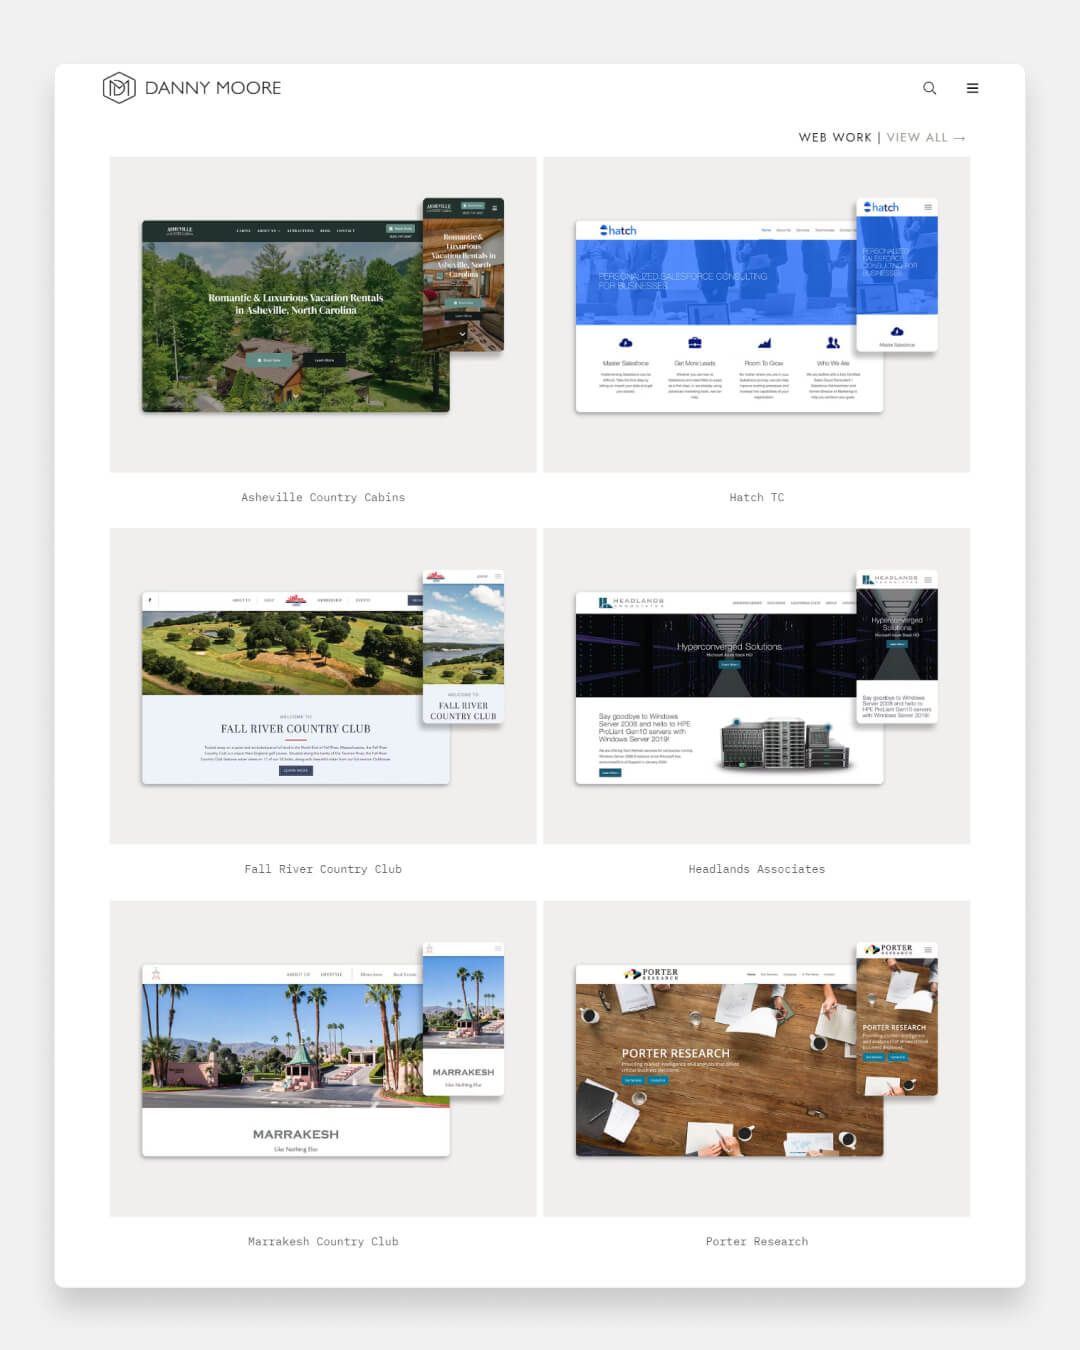 Danny Moore - Web Designer Portfolio Website